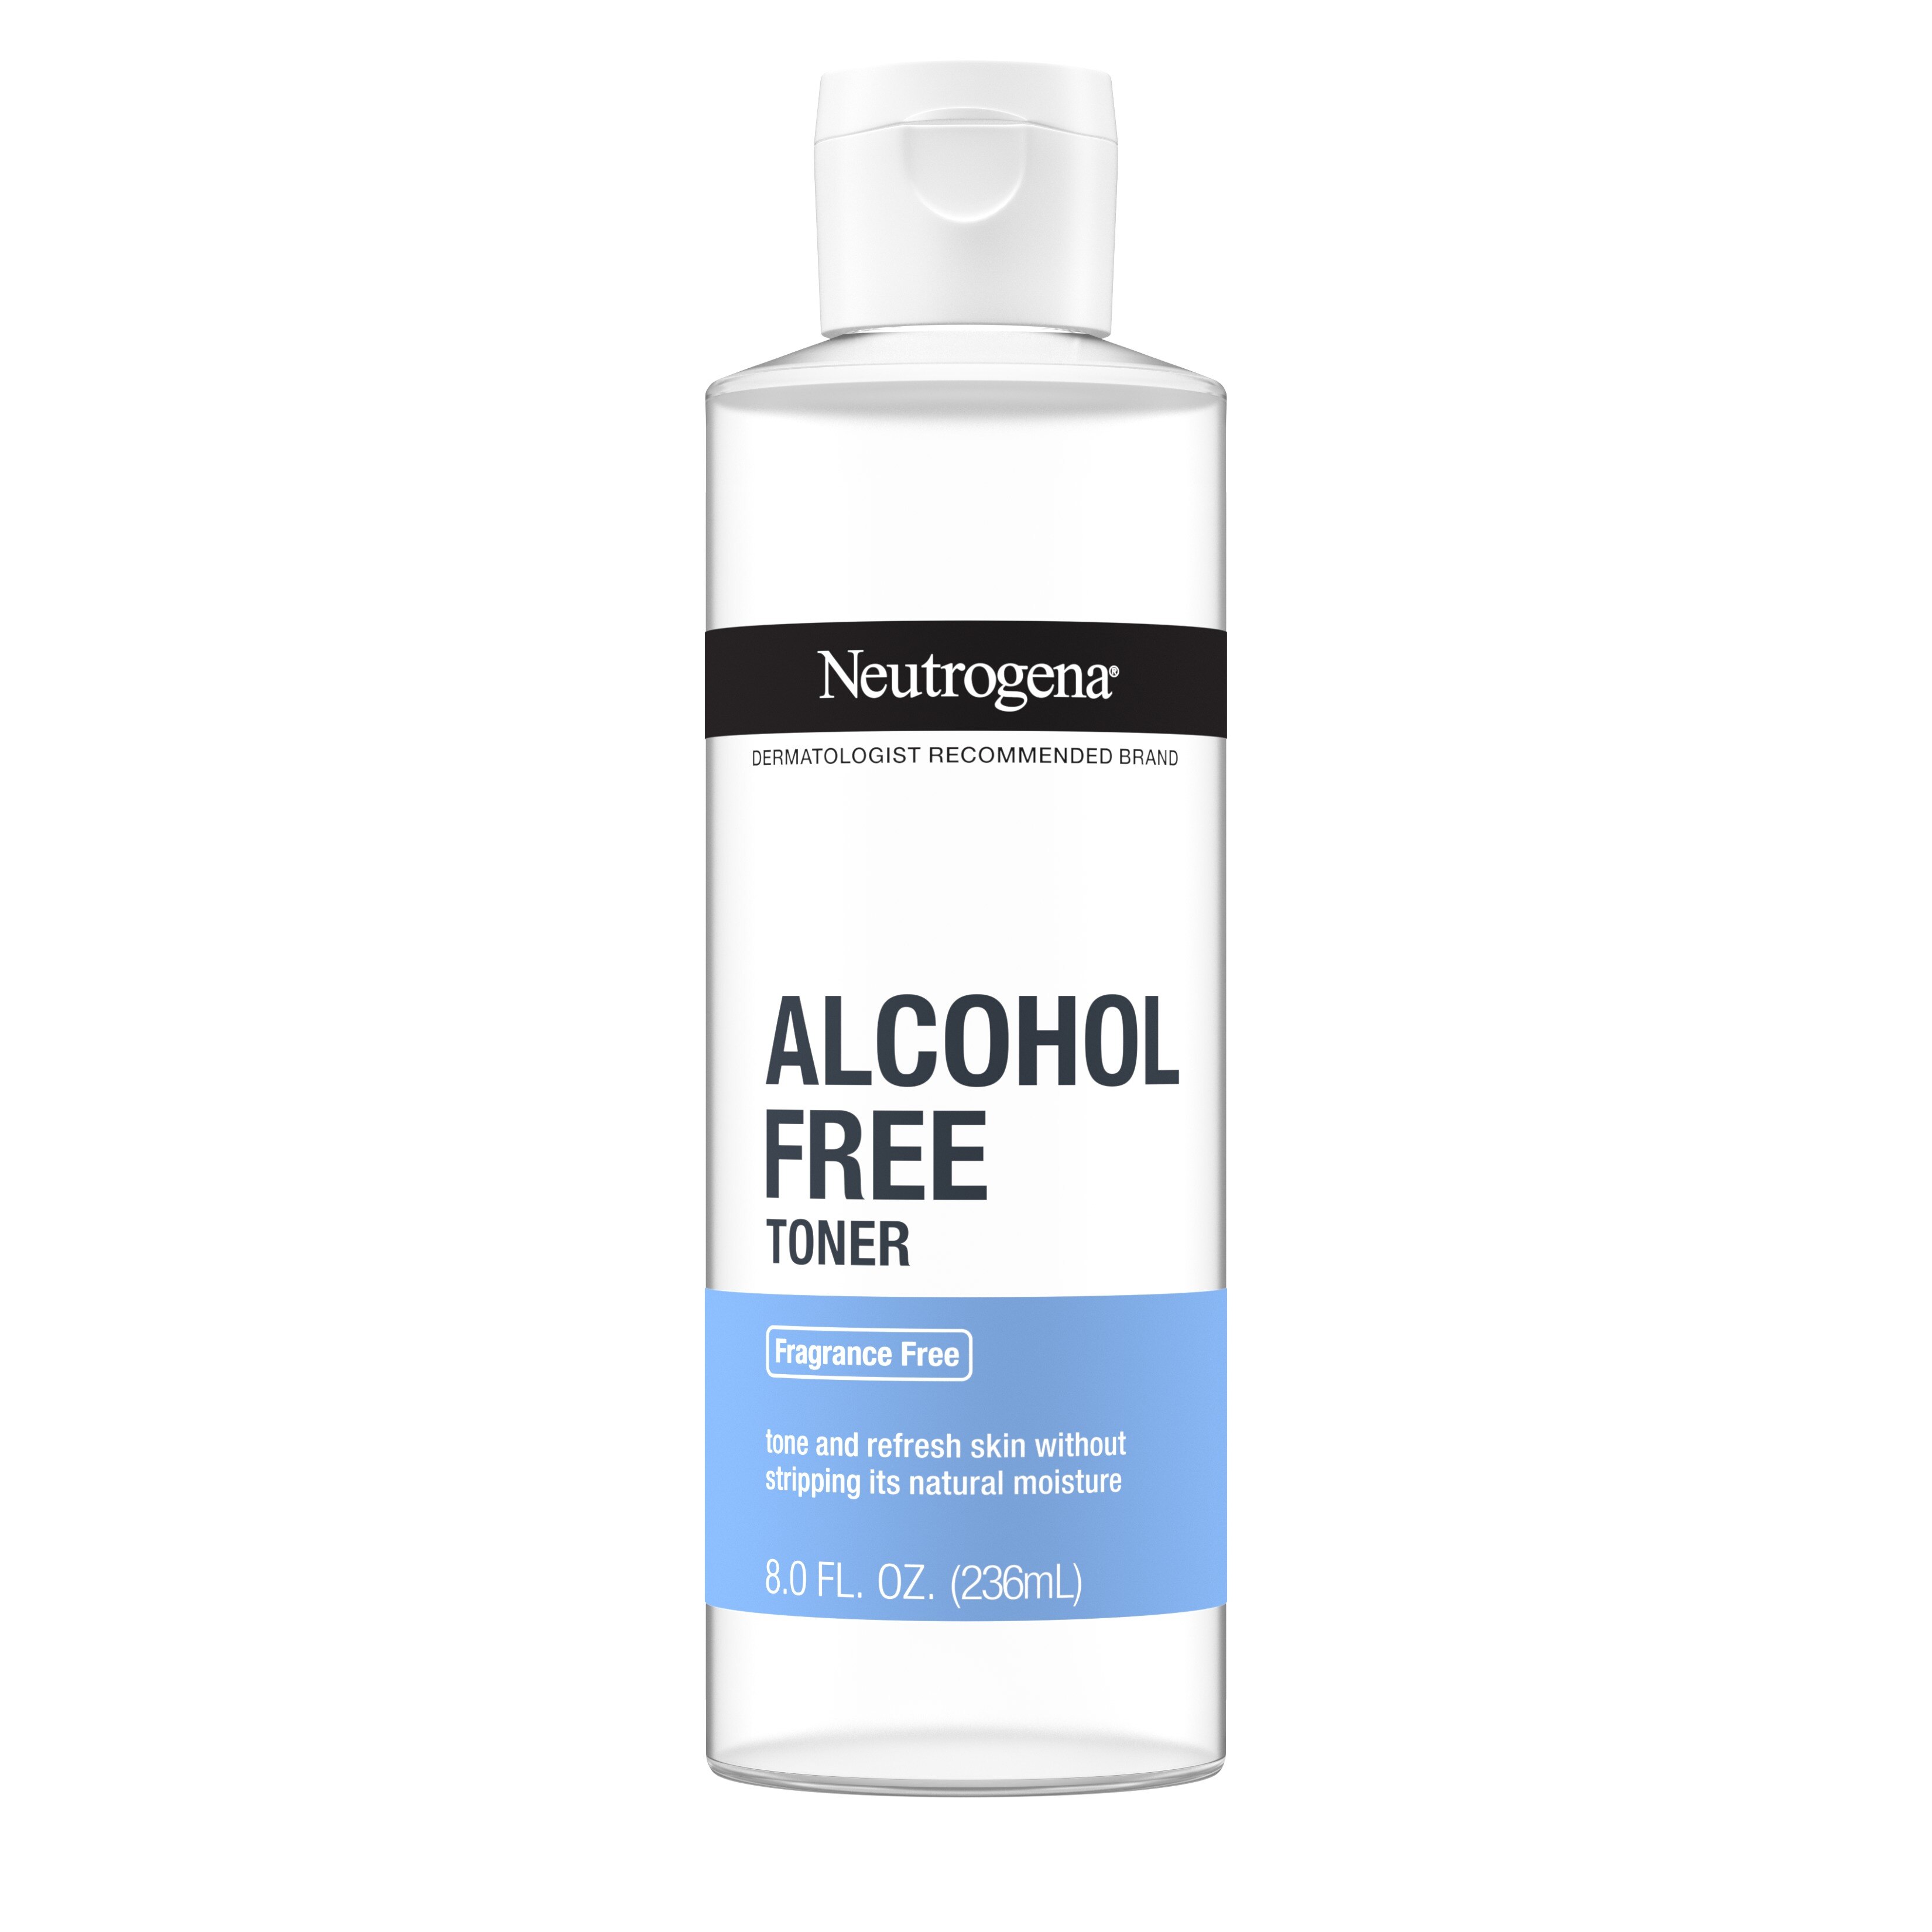 Neutrogena - Tónico sin alcohol, 8.5 oz